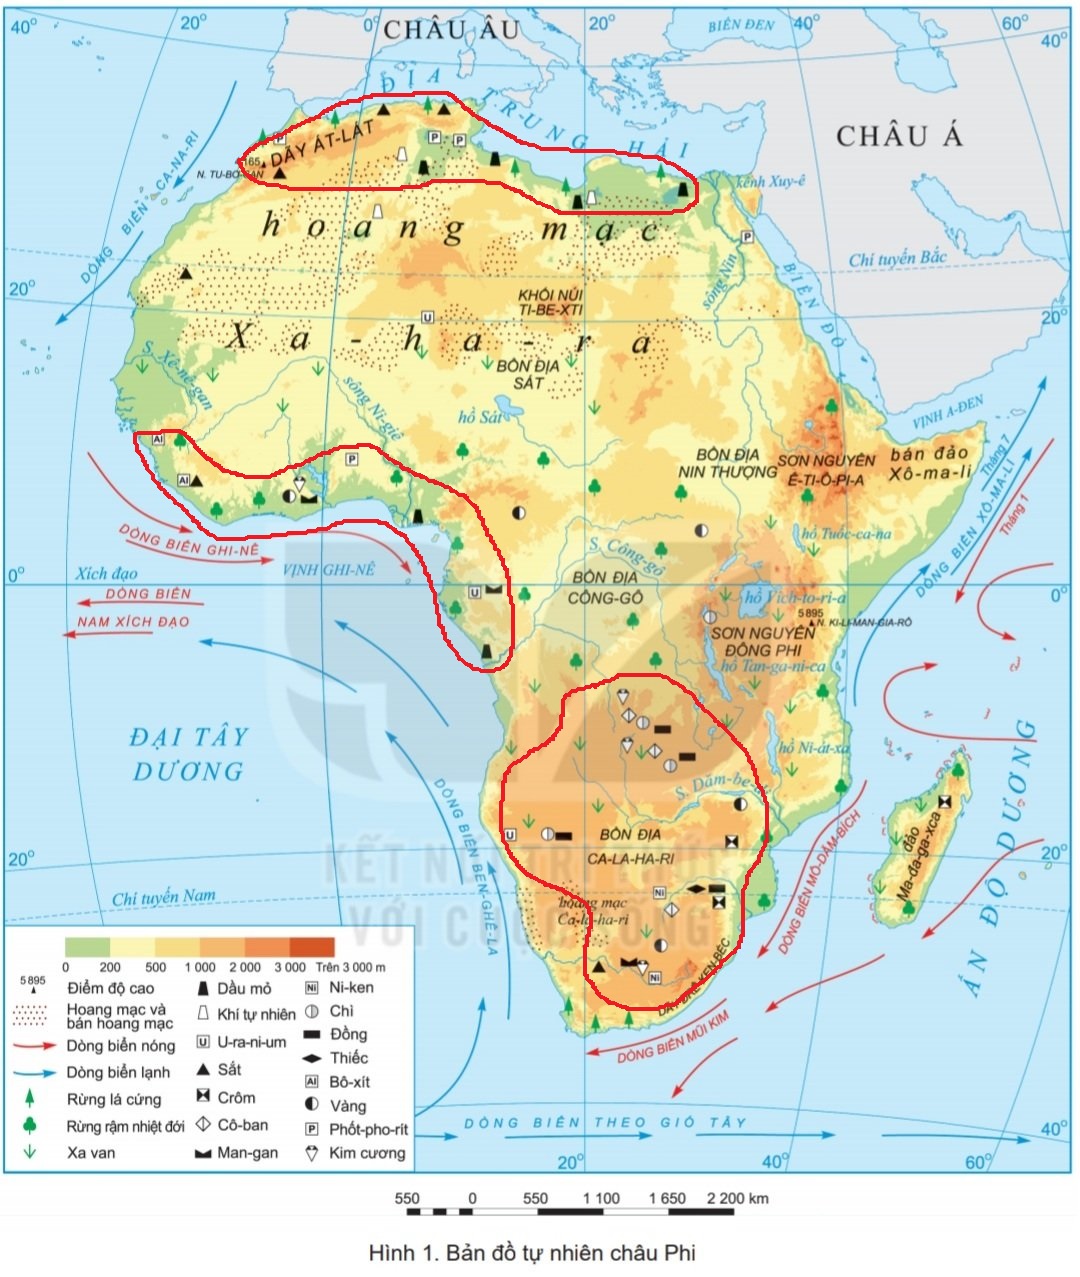 Vị trí địa lý châu Phi (updated to 2024):
Châu Phi nằm ở vị trí đắc địa giữa các lục địa, là nơi giao thoa của nhiều dân tộc và văn hóa. Với những bờ biển nóng bỏng và những vùng đồng cỏ xanh tươi, Châu Phi đang dần trở thành một điểm đến yêu thích của các du khách. Để khám phá thêm về địa lý của Châu Phi vào năm 2024, hãy xem các ảnh liên quan đến vị trí địa lý của châu lục này.